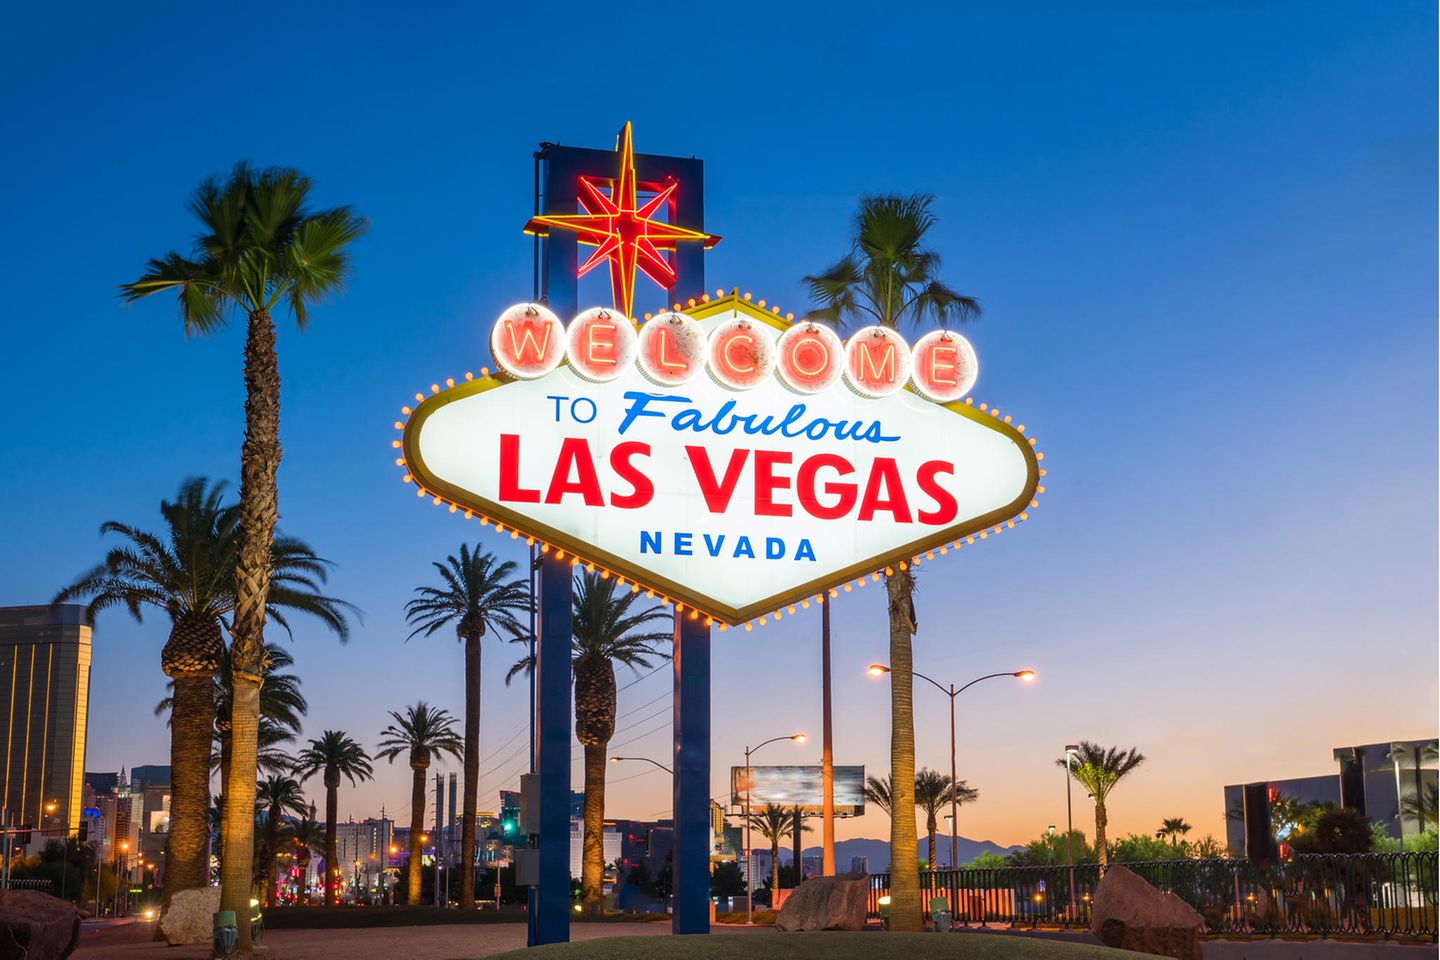 Das berühmte Las-Vegas-Schild begrüßt Besucher der Stadt bei ihrer Ankunft.